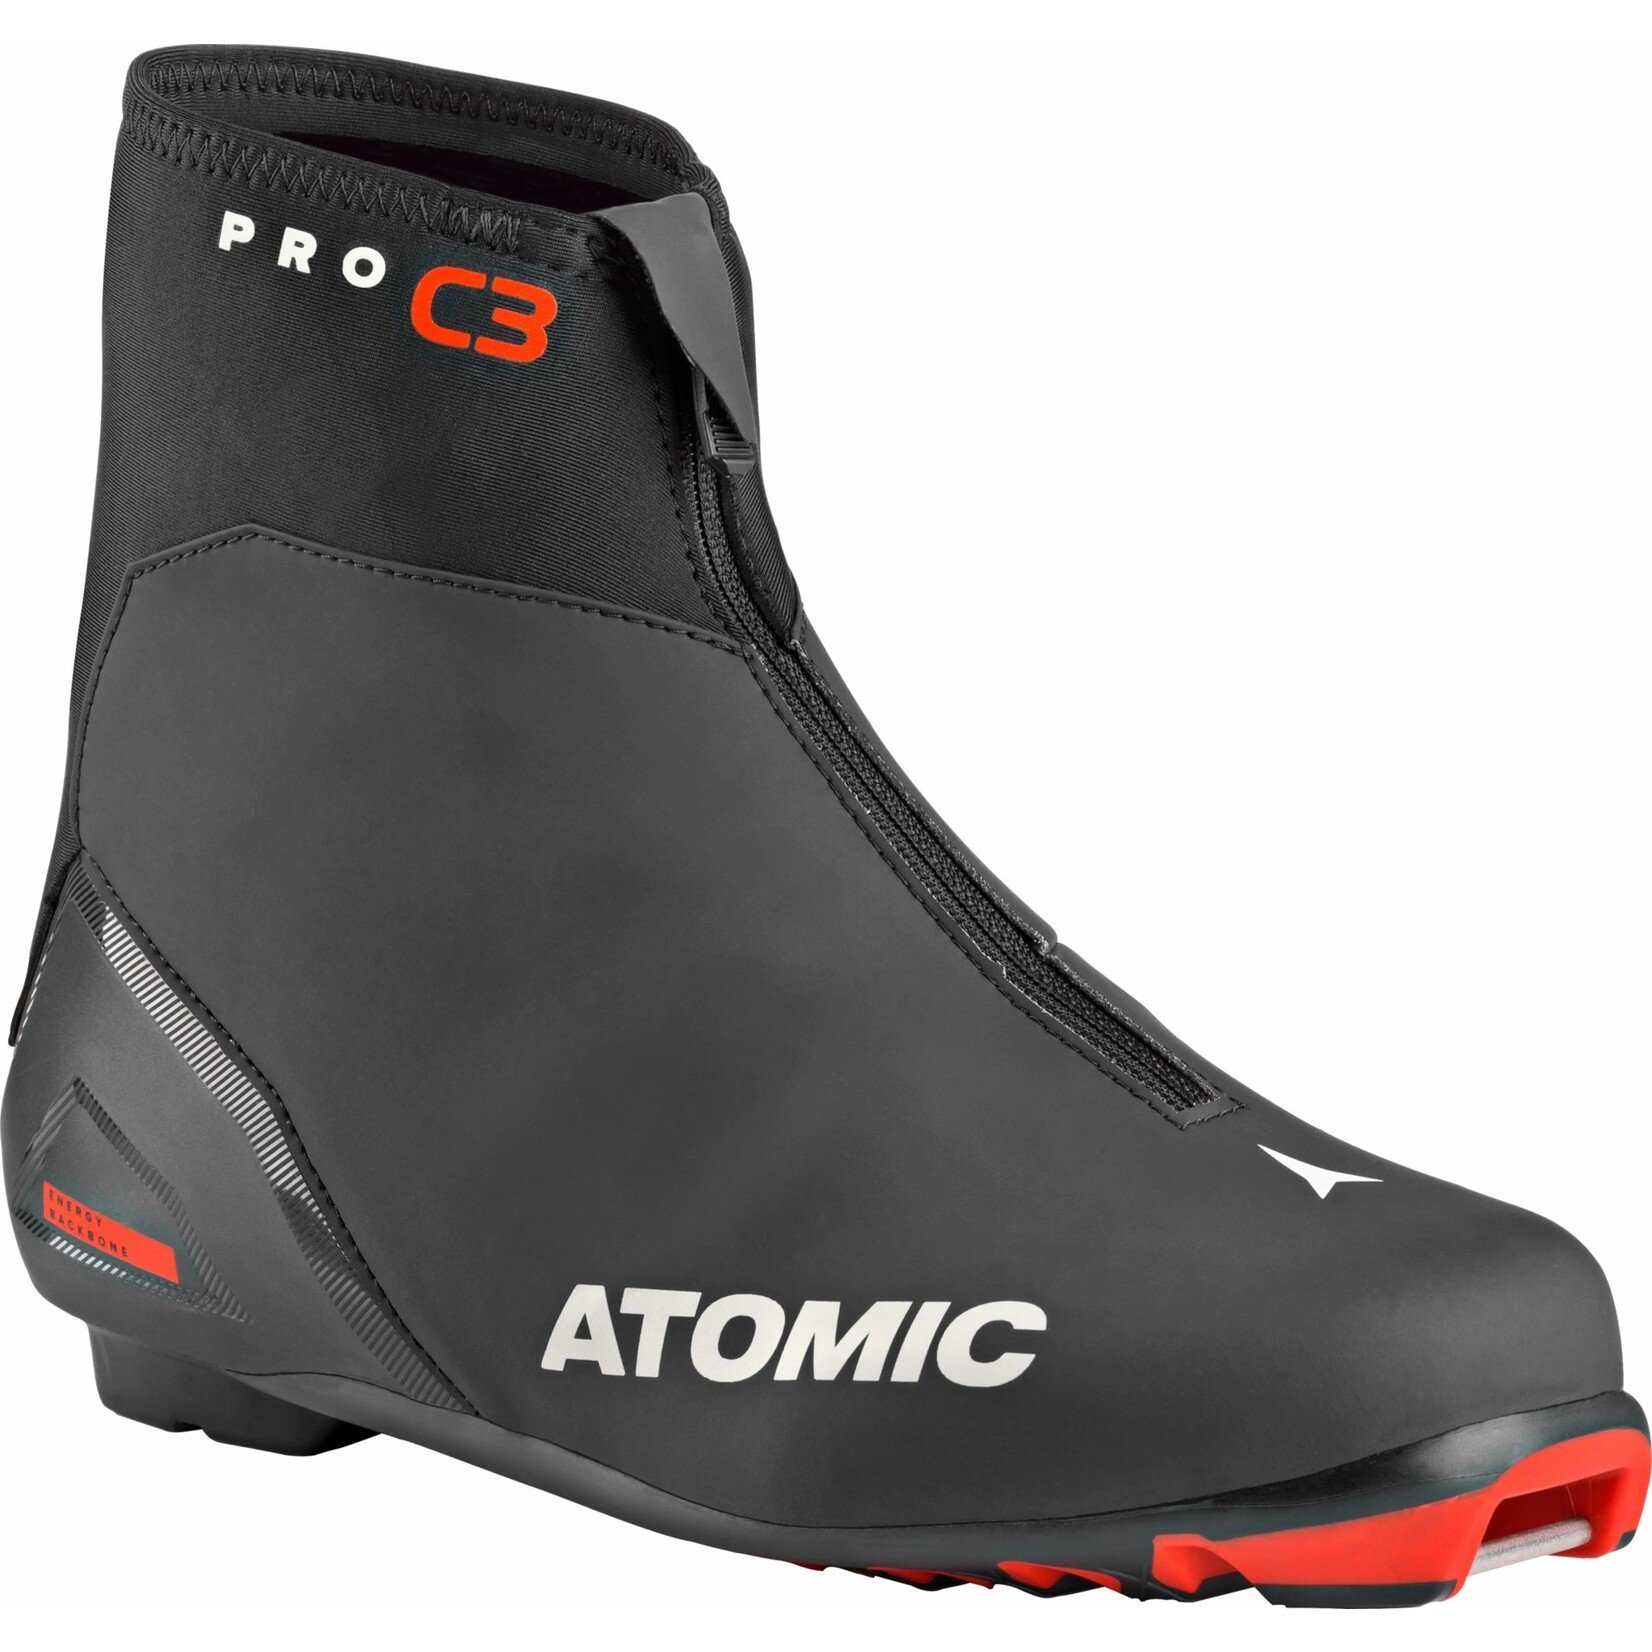 Atomic Pro C3 (bottes de ski de fond)